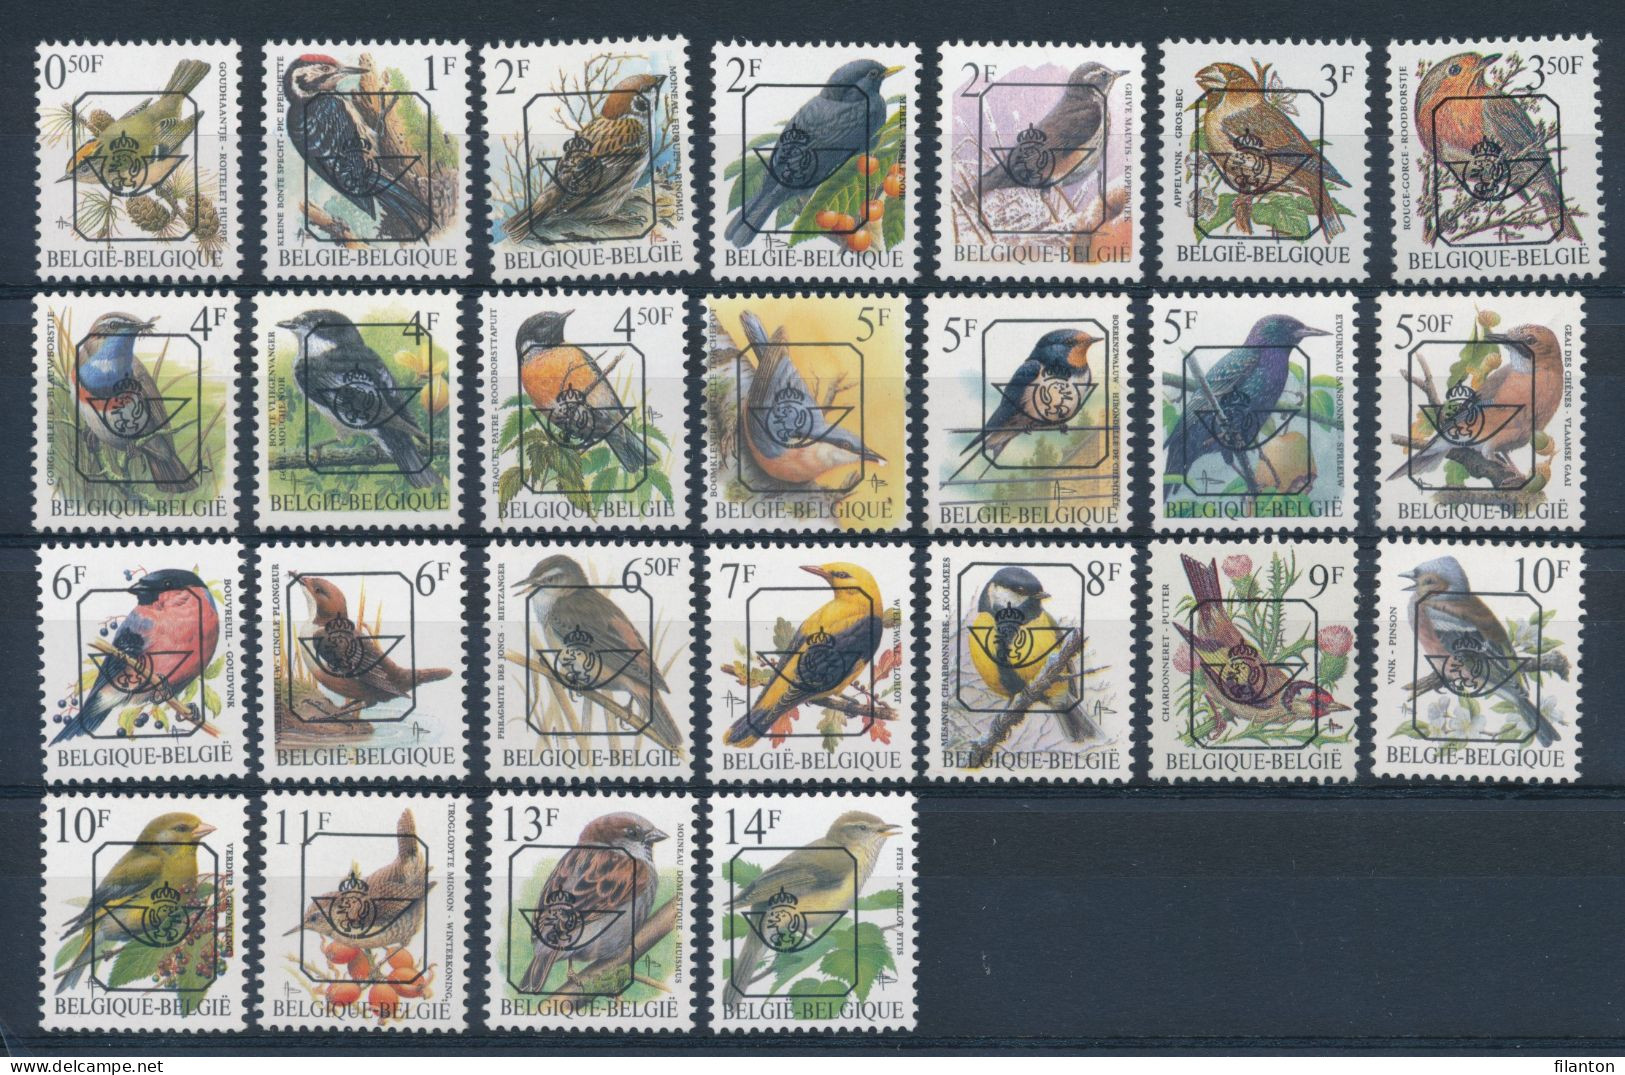 BELGIE - Preo Selectie Nr 537 - PRECANCELS - BUZIN - MNH** - Typo Precancels 1986-96 (Birds)